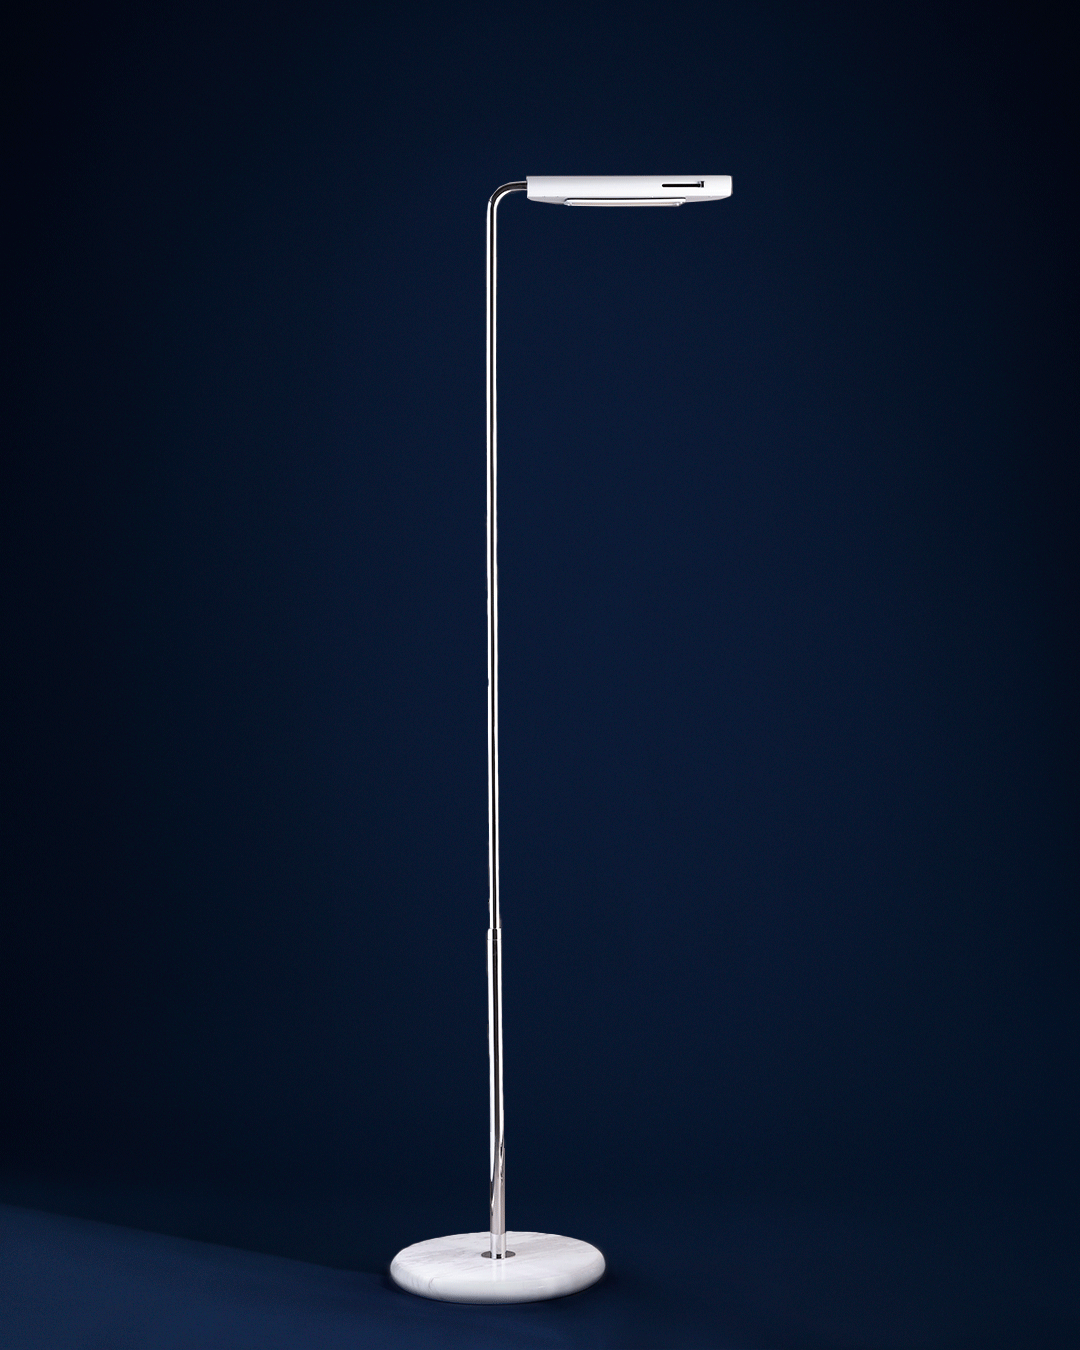 Ikonische 70er Jahre Stehleuchte MEZZALUNA: Der Reflektor lässt sich seitlich schwenken und um 360° drehen. 